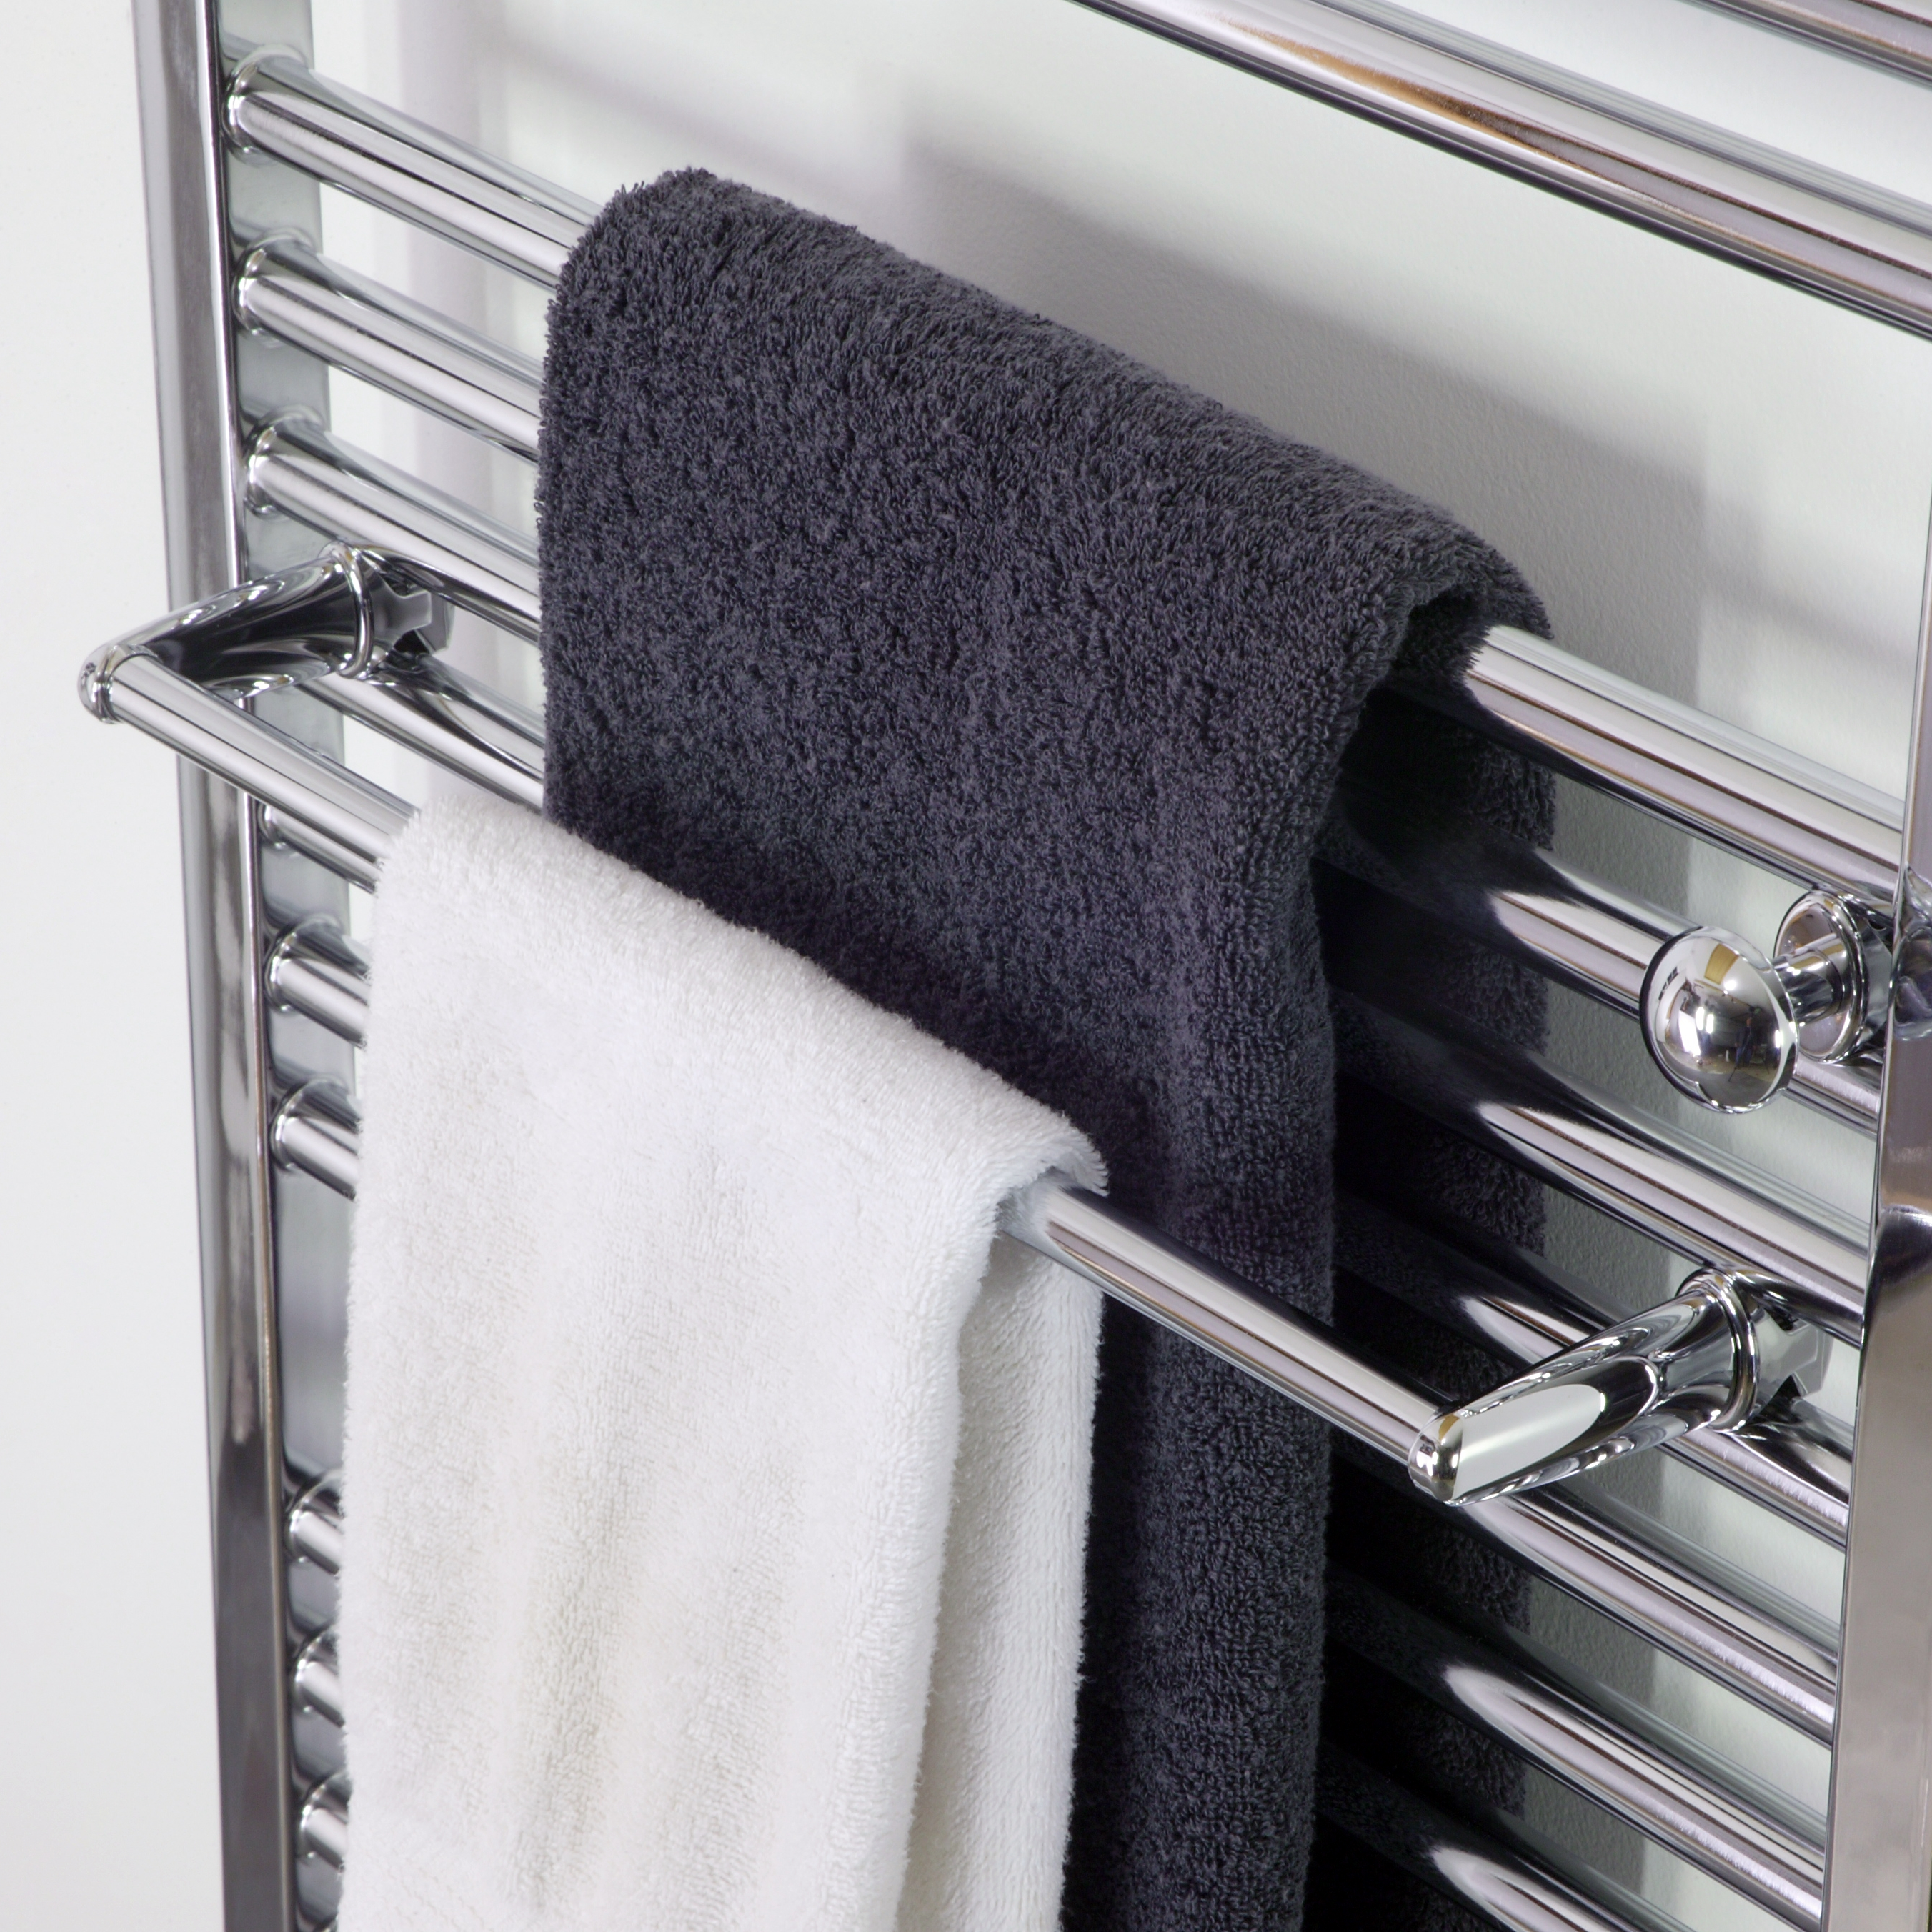 Заменить полотенца. Сушилка Towel Warmer. Towel Rack сушилка для белья. Полотенцесушитель Towel Dryer -p-352-500. Полотенцесушитель Towel Rack r116.